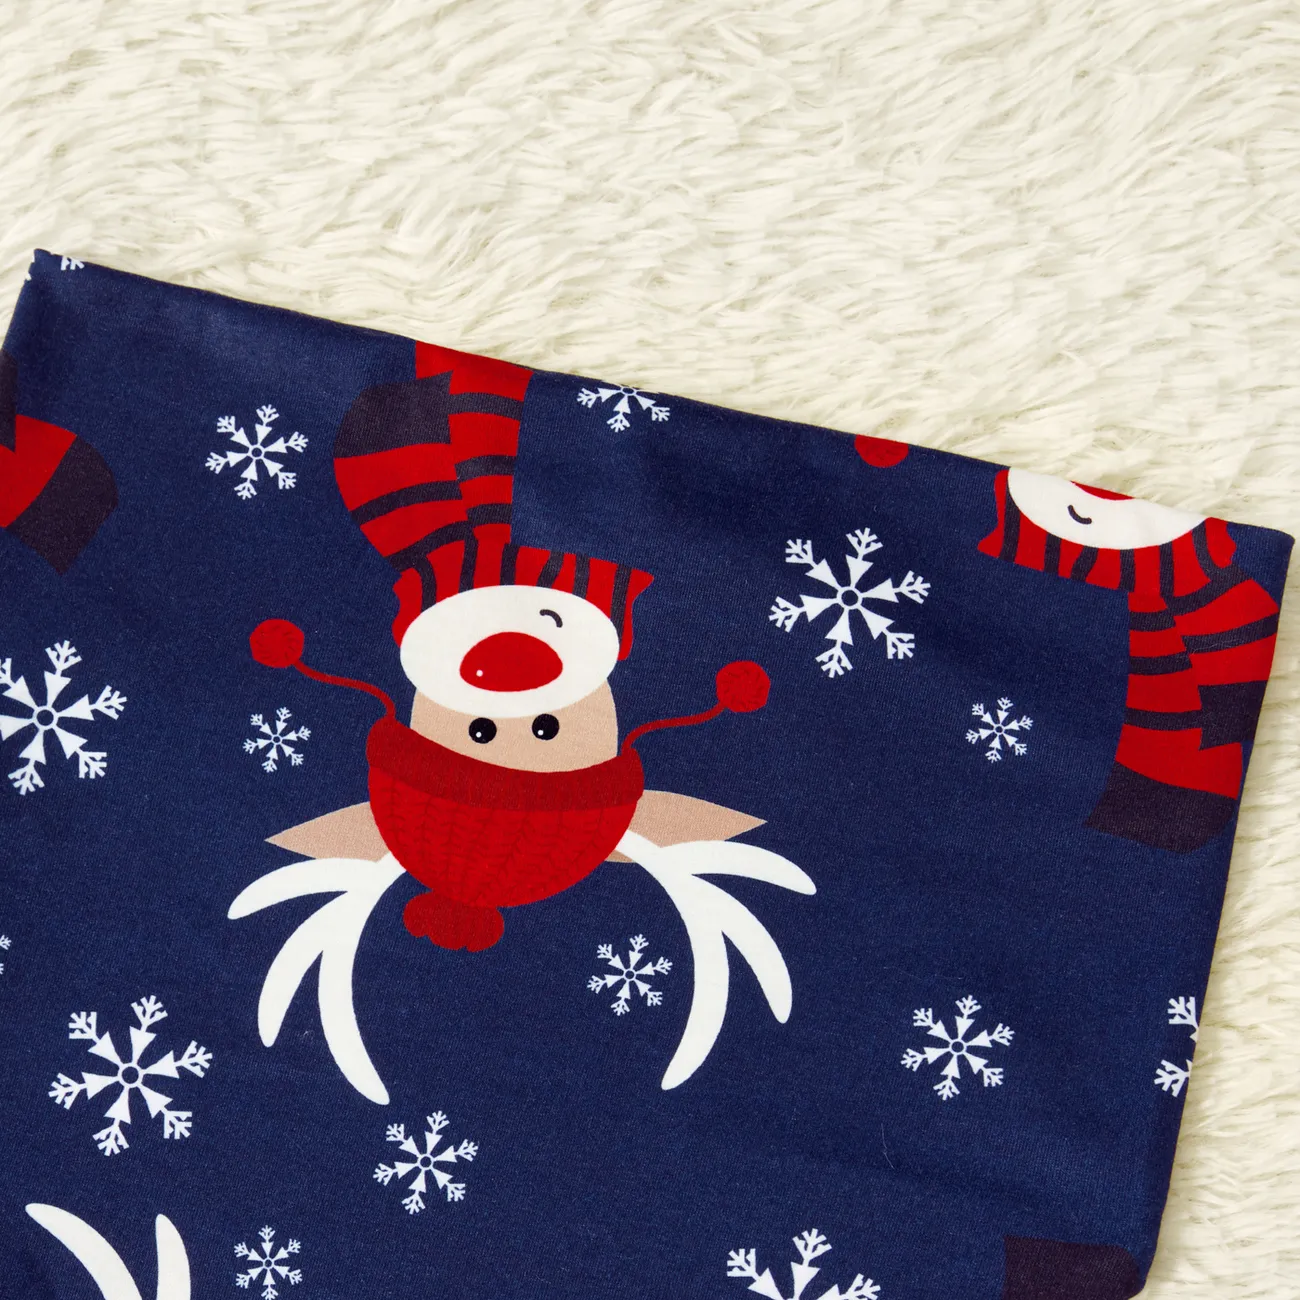 Natal Look de família Manga comprida Conjuntos de roupa para a família Pijamas (Flame Resistant) Azul Escuro/Branco/Vermelho big image 1